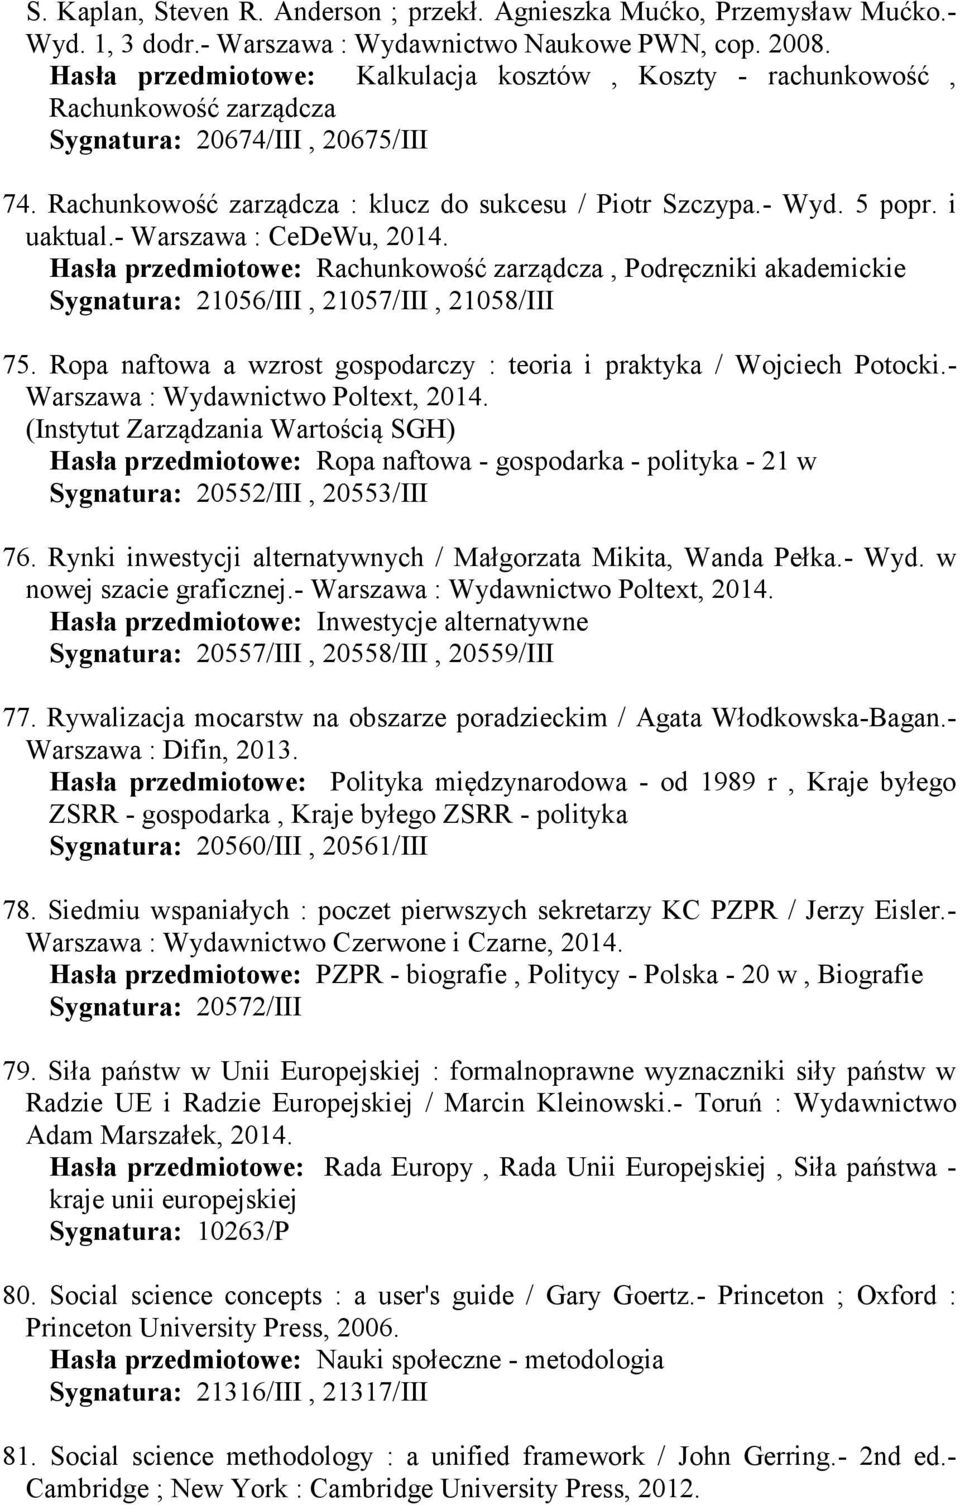 i uaktual.- Warszawa : CeDeWu, 2014. Hasła przedmiotowe: Rachunkowość zarządcza, Podręczniki akademickie Sygnatura: 21056/III, 21057/III, 21058/III 75.